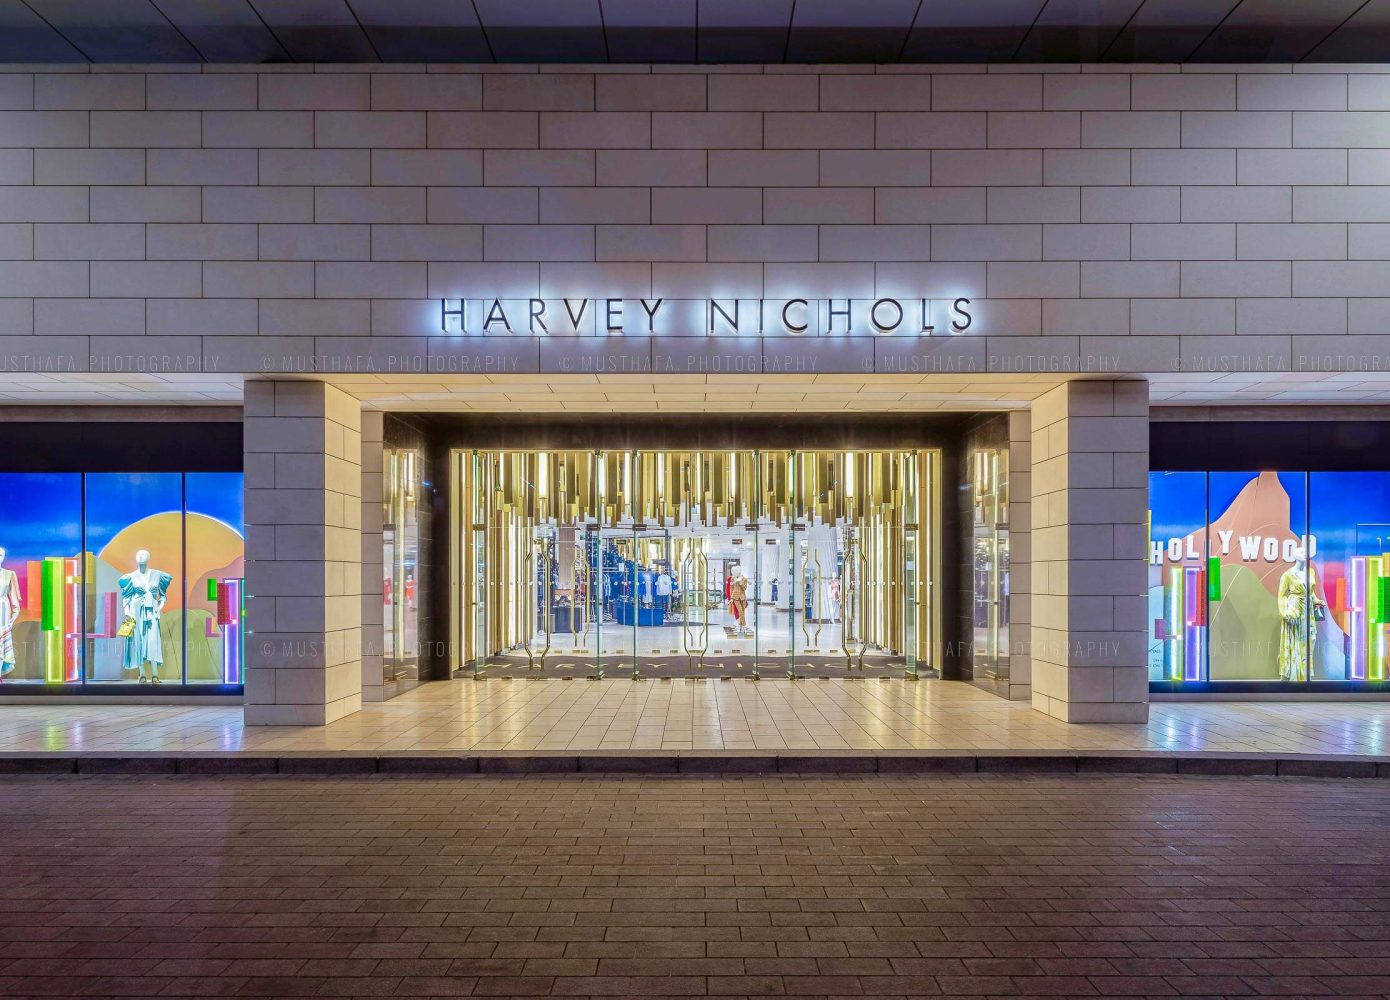 harvey nichols store exterior Dubai Mall of Emirates Abu Dhabi UAE Qatar Doha Kuwait Bahrain Oman Saudi Arabia KSA Riyadh Bahrain 1